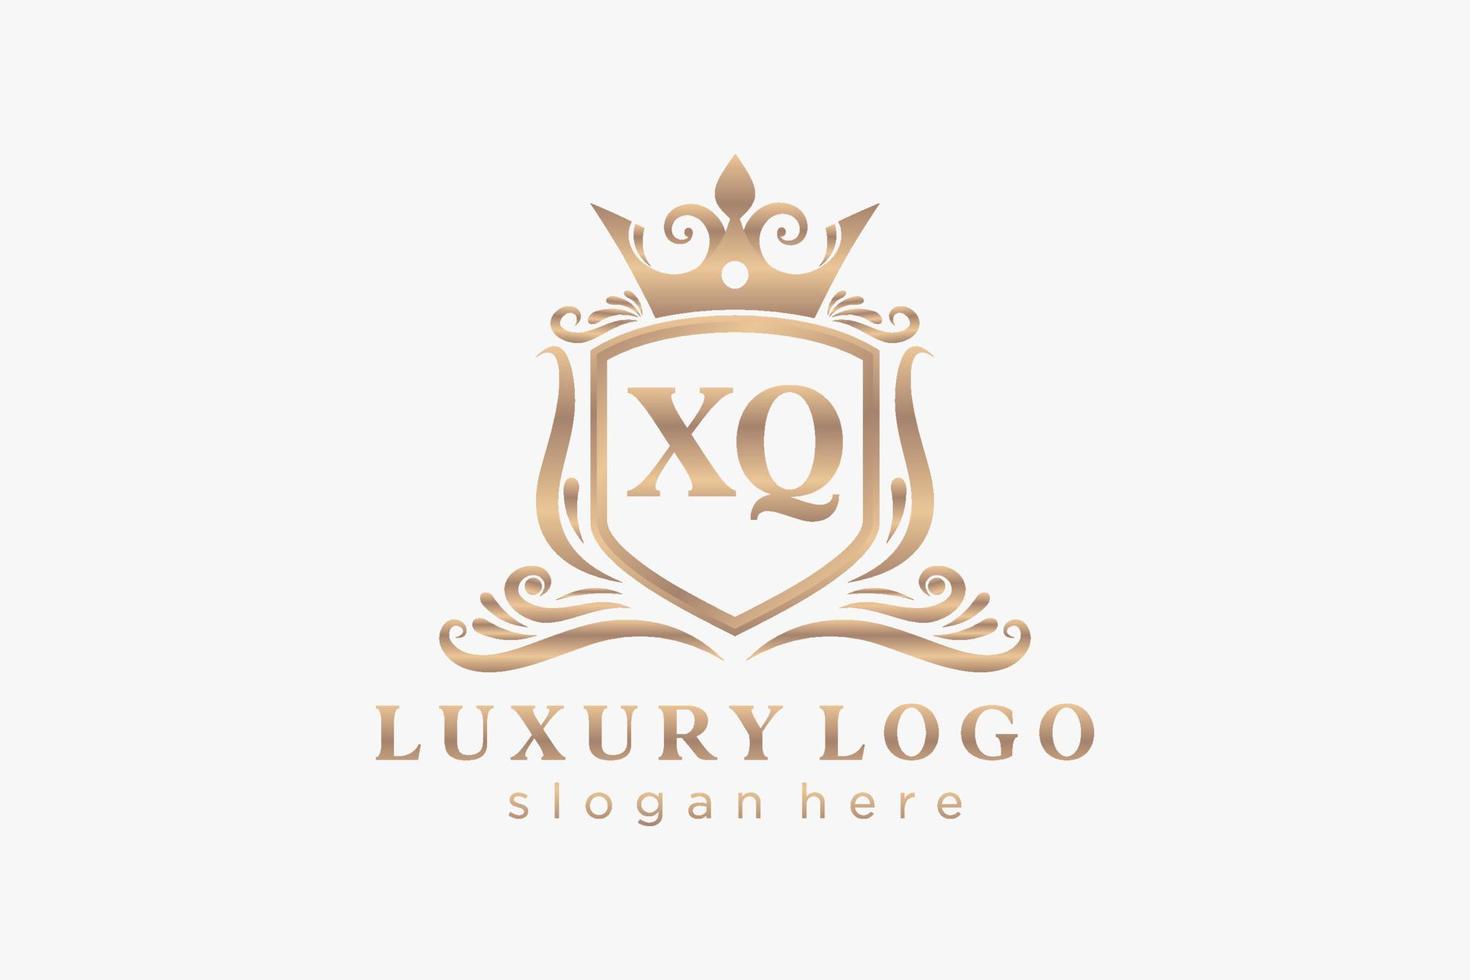 Royal Luxury Logo-Vorlage mit anfänglichem xq-Buchstaben in Vektorgrafiken für Restaurant, Lizenzgebühren, Boutique, Café, Hotel, Heraldik, Schmuck, Mode und andere Vektorillustrationen. vektor